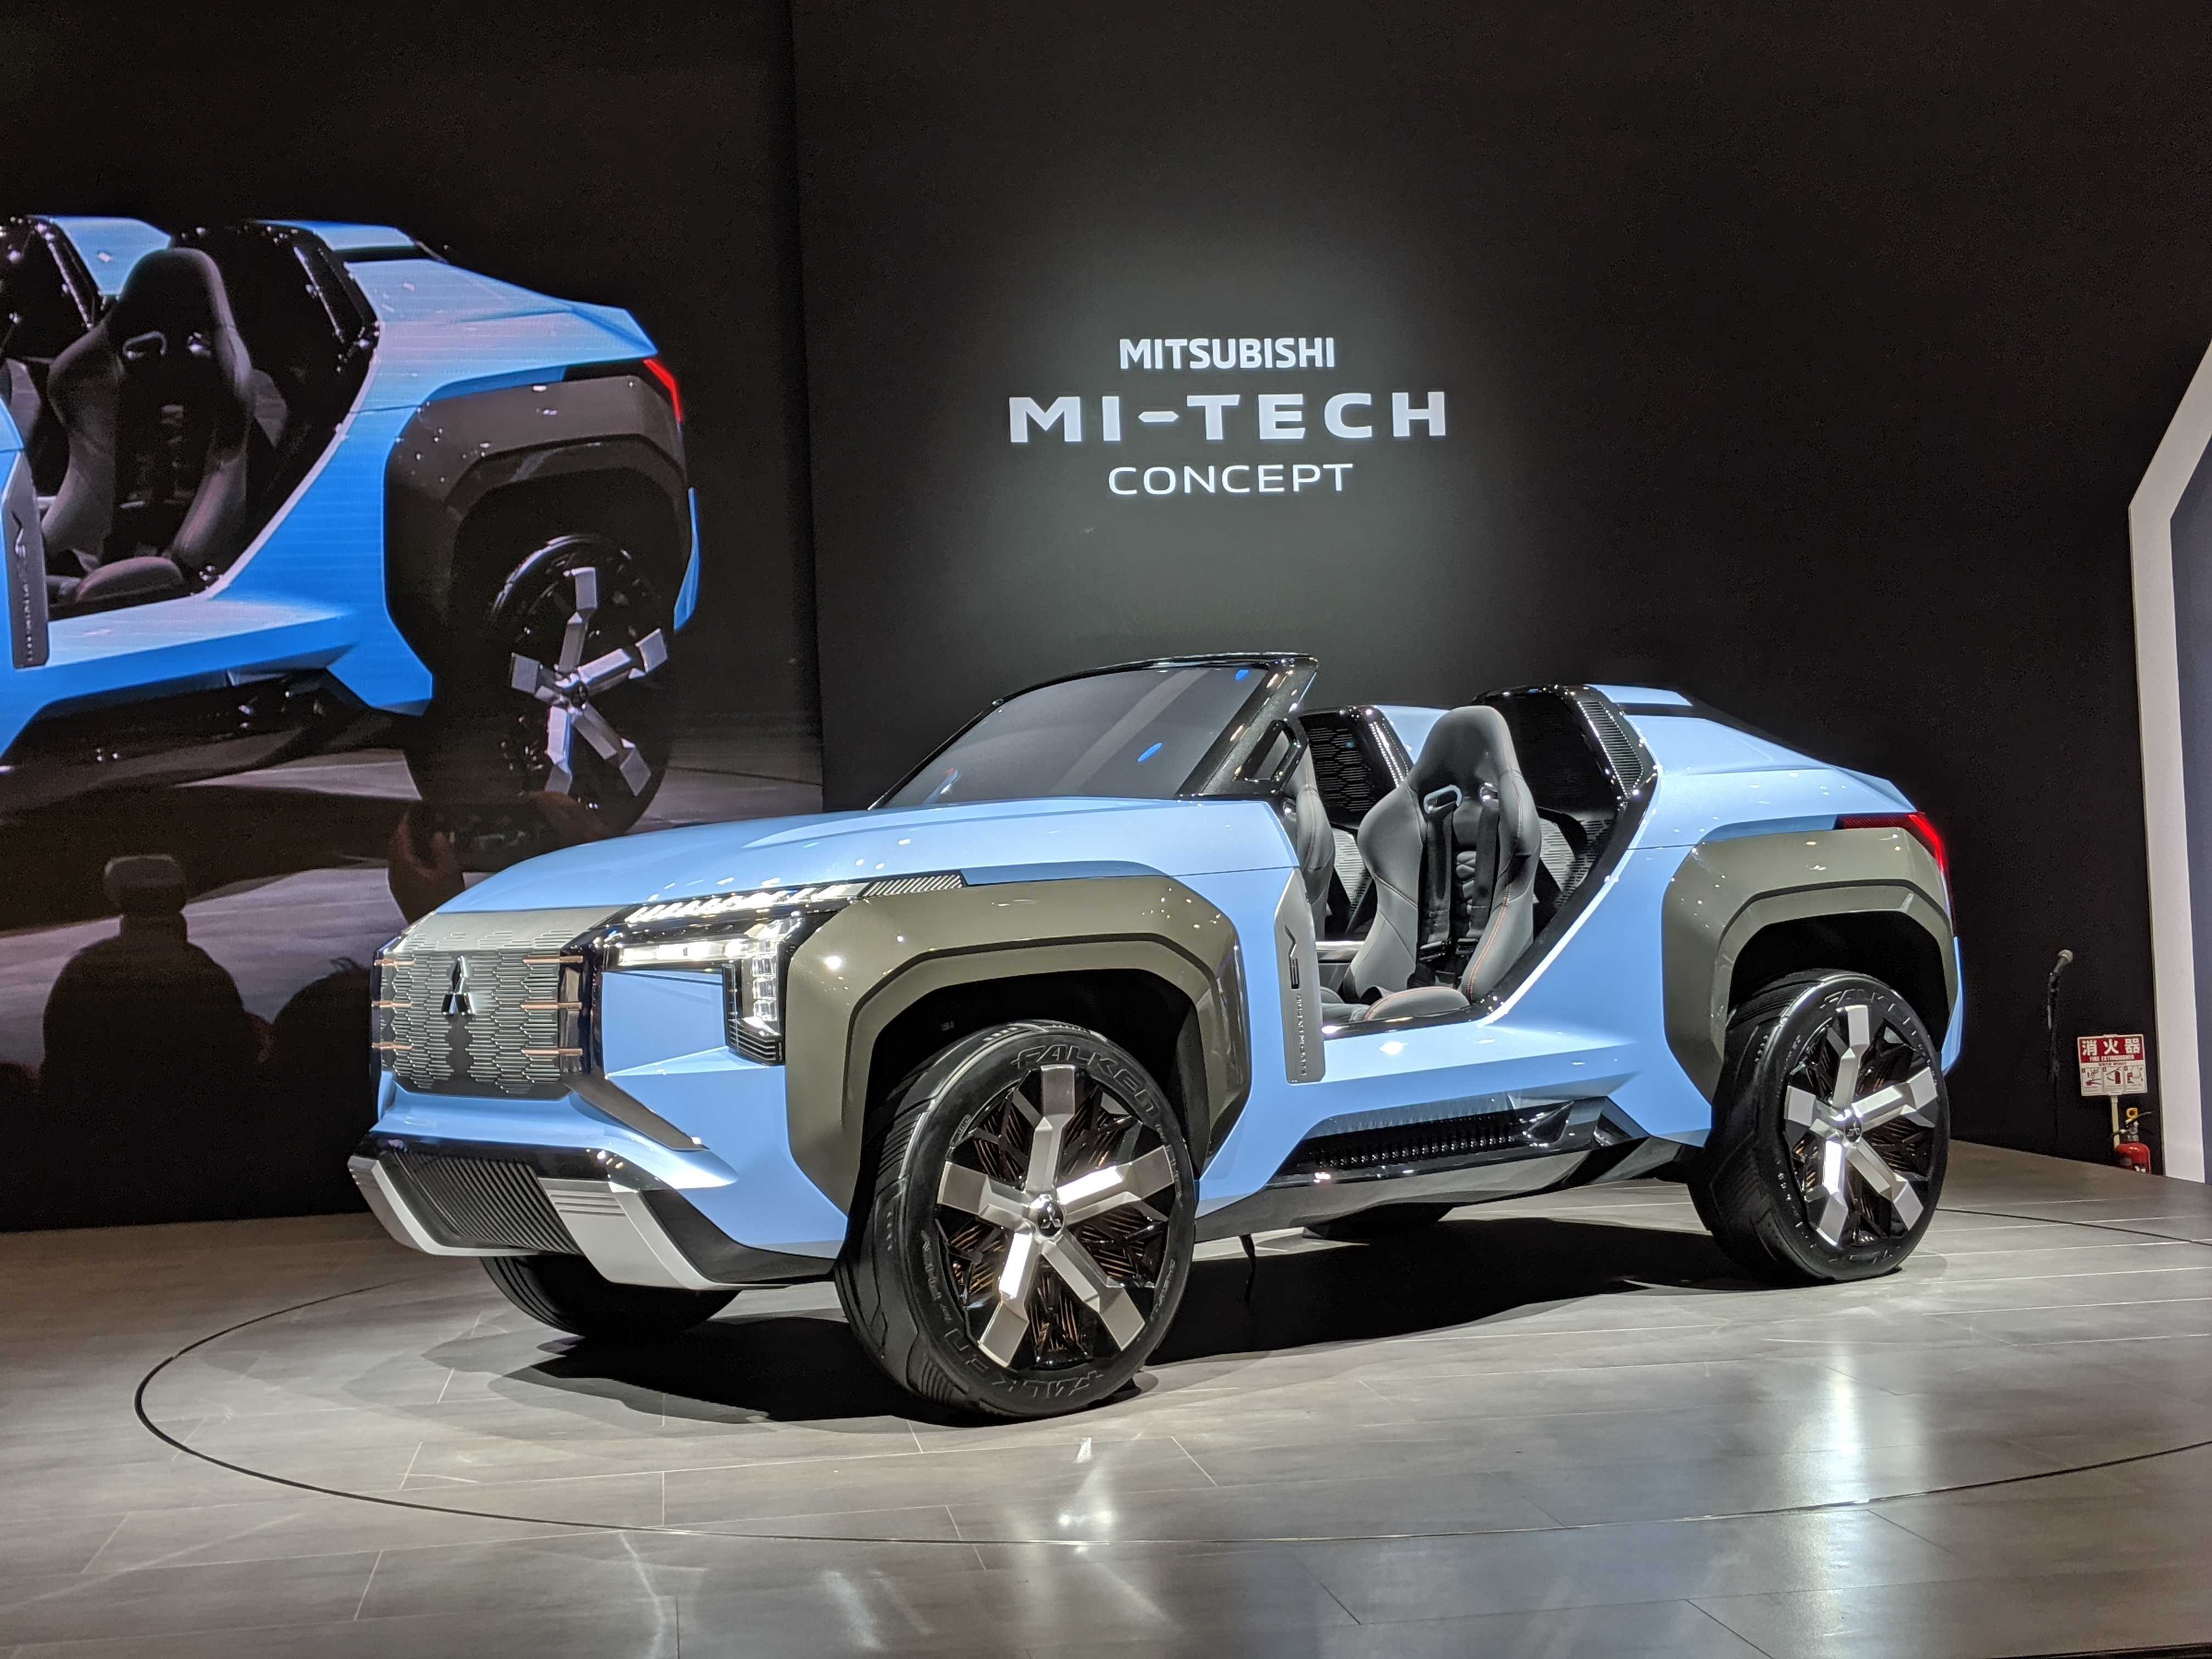 ภาพคันจริง! Mitsubishi MI-TECH Concept Car ในงาน Tokyo Motor Show 2019